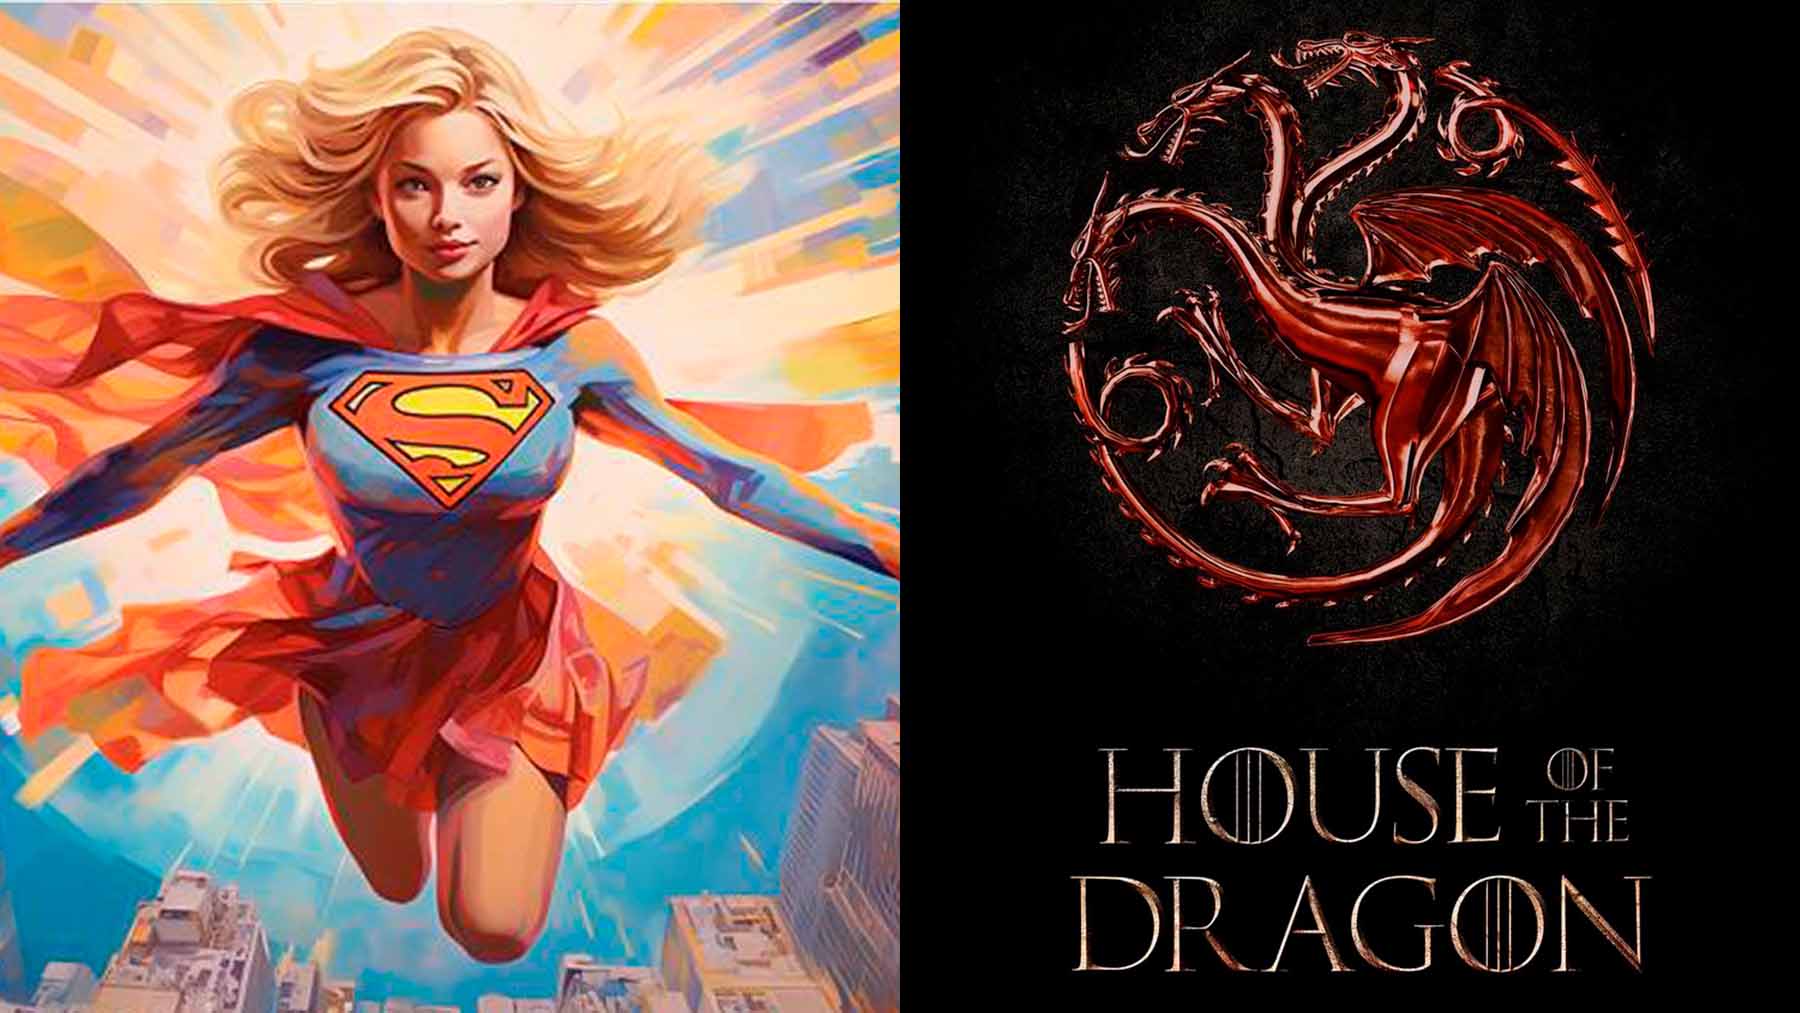 La actriz de Supergirl sale del casting de ‘La casa del dragón’ (HBO)